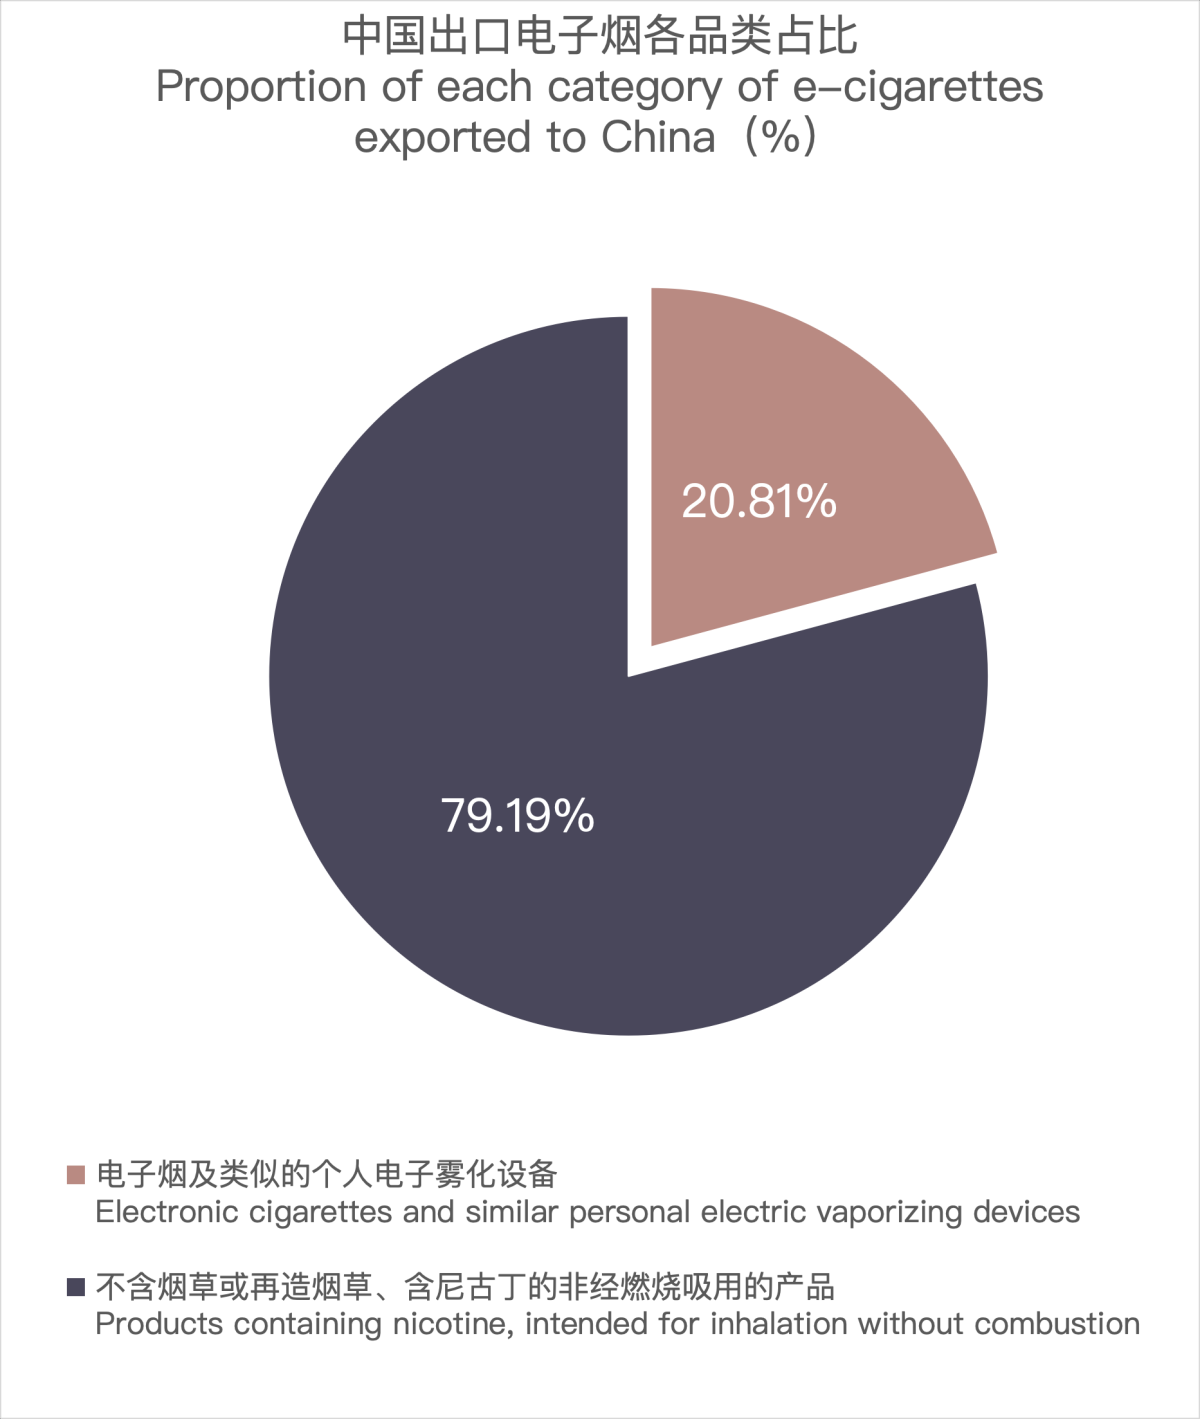 3月中国出口荷兰电子烟约3213万美元 环比上升17.92%